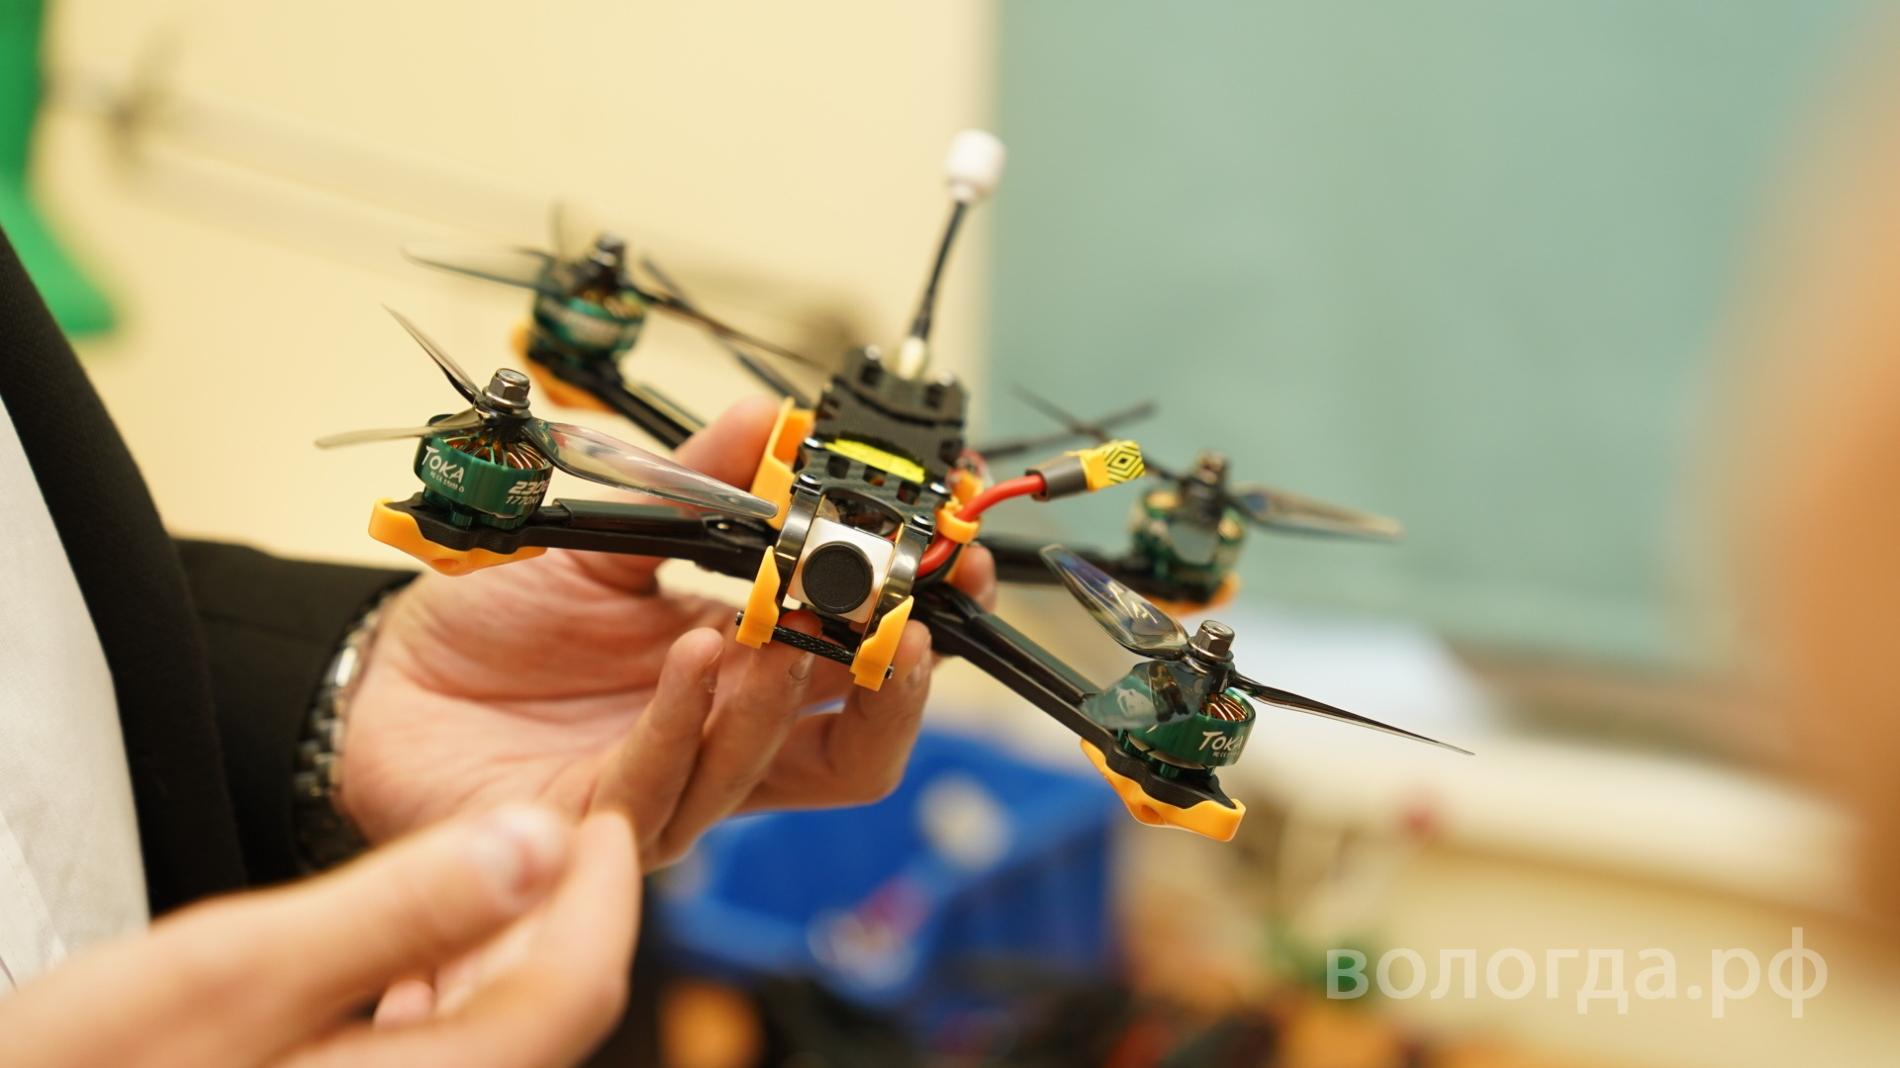 Порядка 1000 спортивных и промышленных дронов ежемесячно производится в Вологде